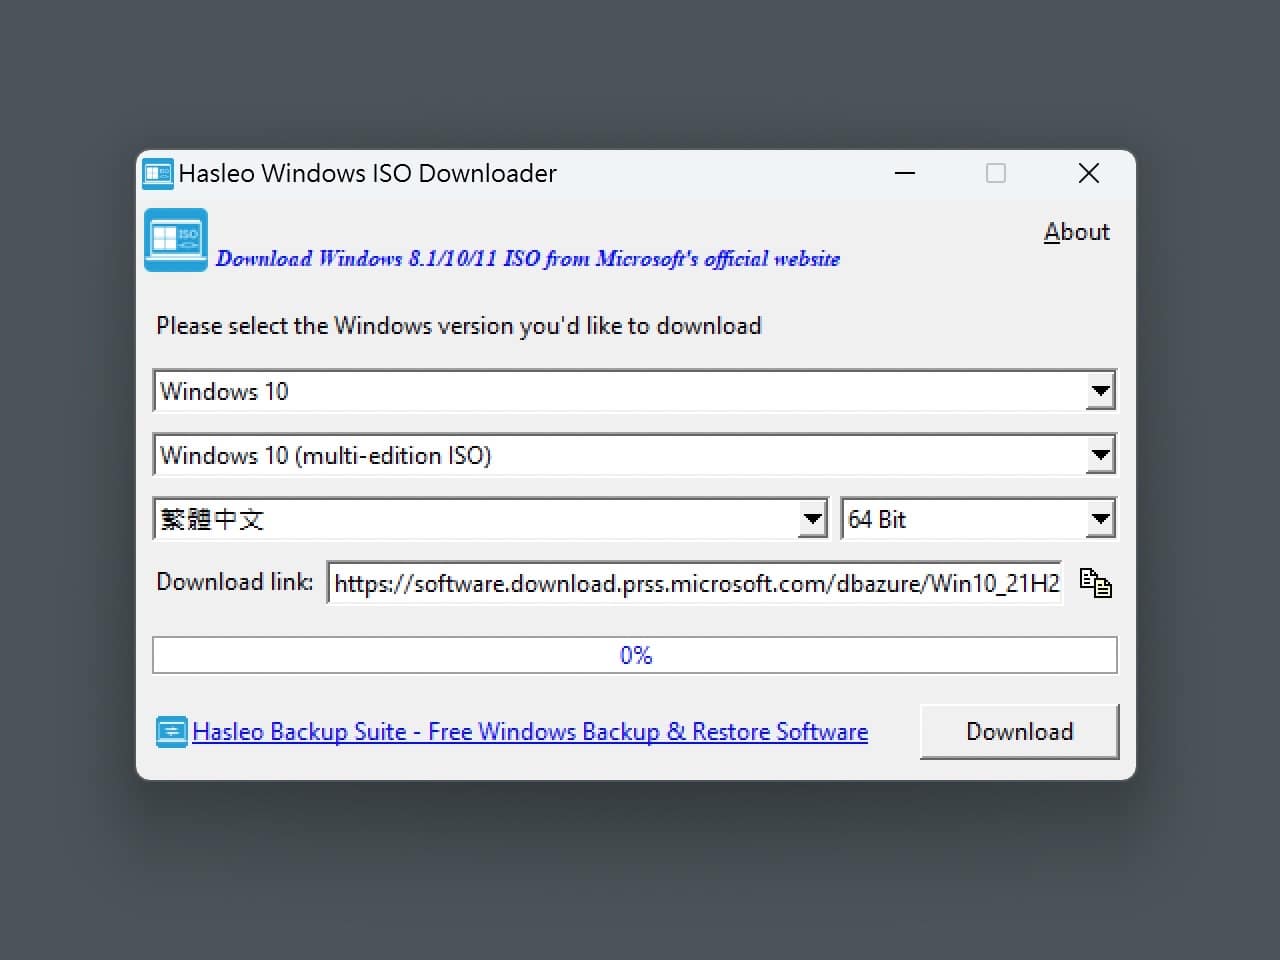 Hasleo Windows ISO Downloader